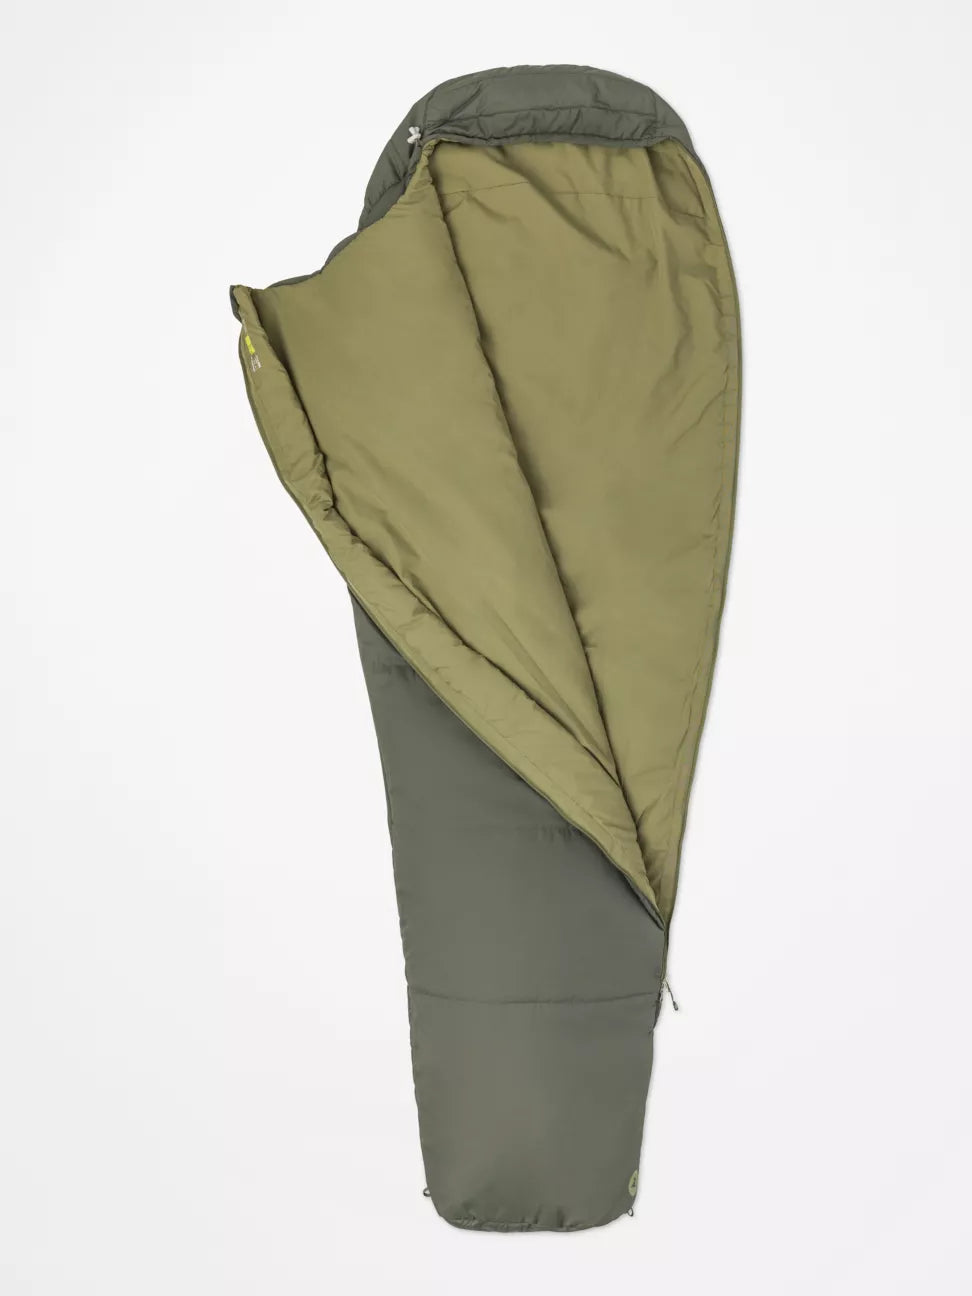 Zipper open mummy style sleeping bag with dar/k green exterior, light green interior